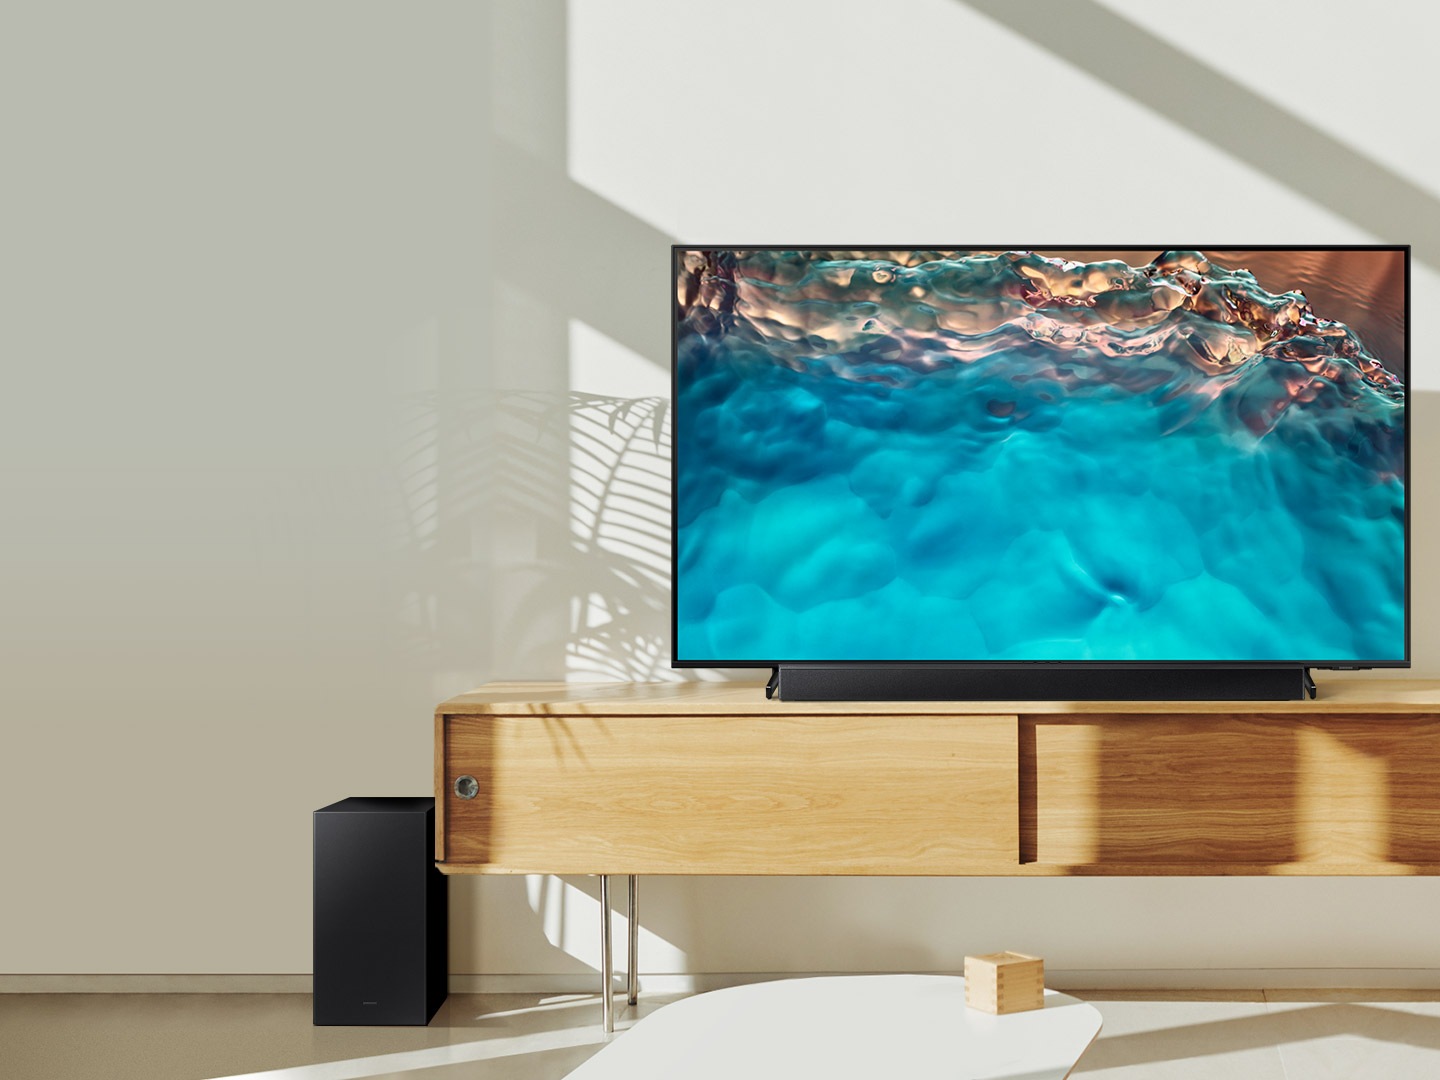 Саундбар і сабвуфер Samsung серії B розташовані разом із Crystal UHD TV на шафі у вітальні.